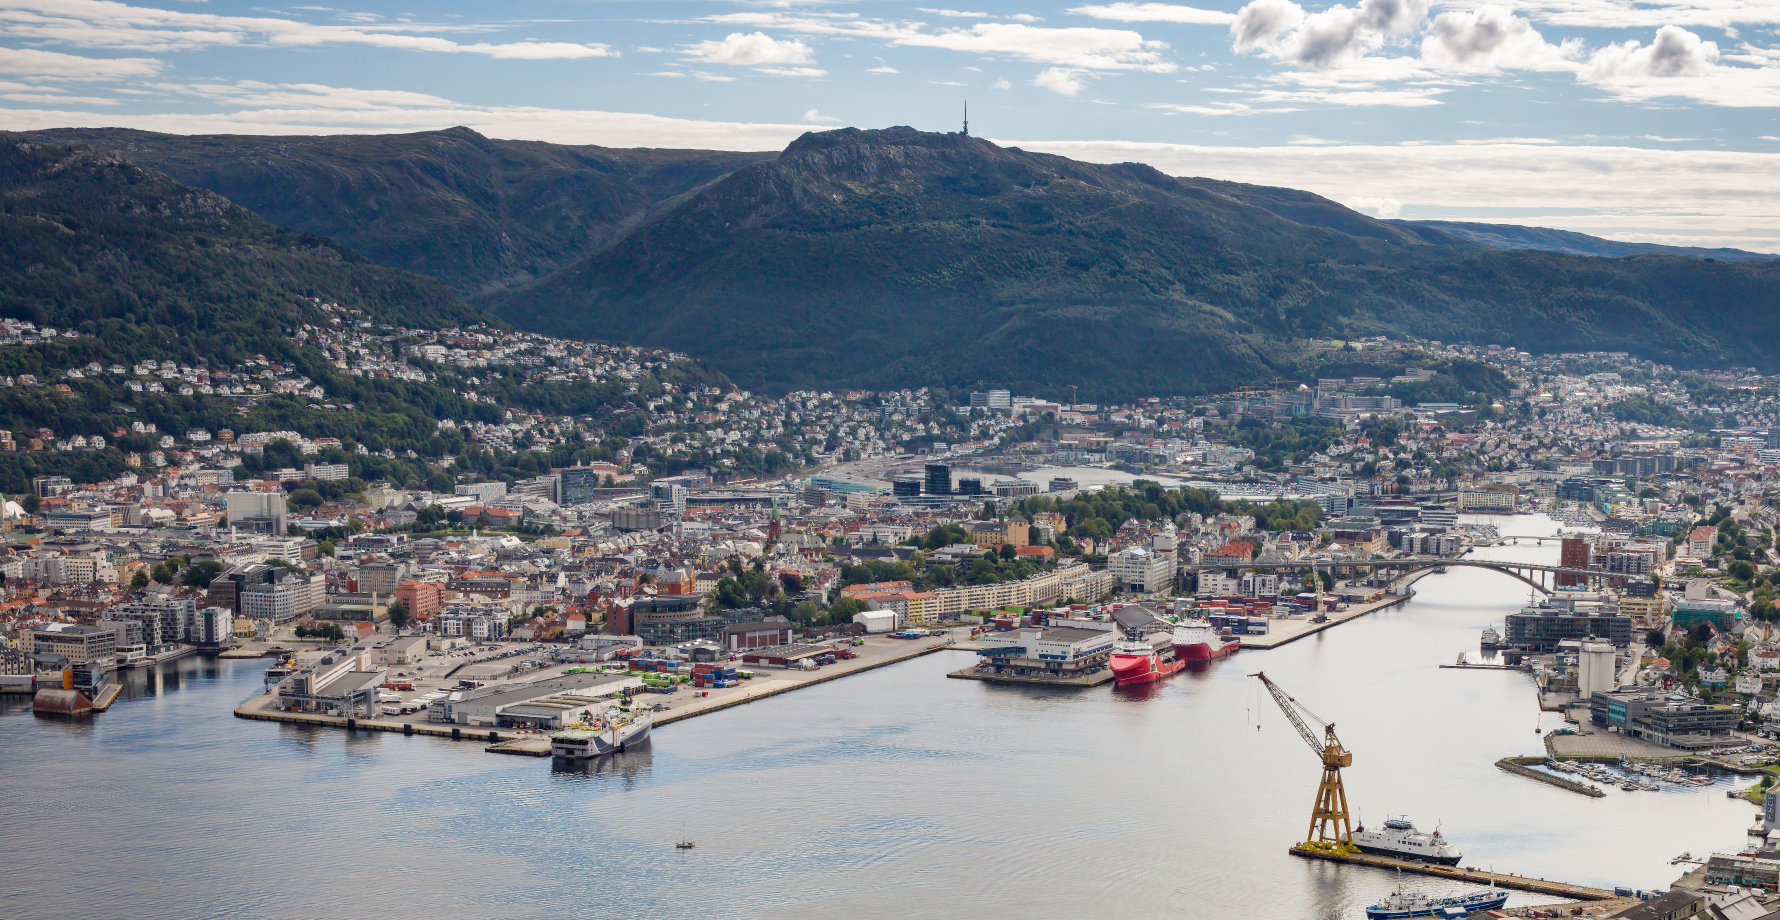 Port of Bergen seen from a birds view